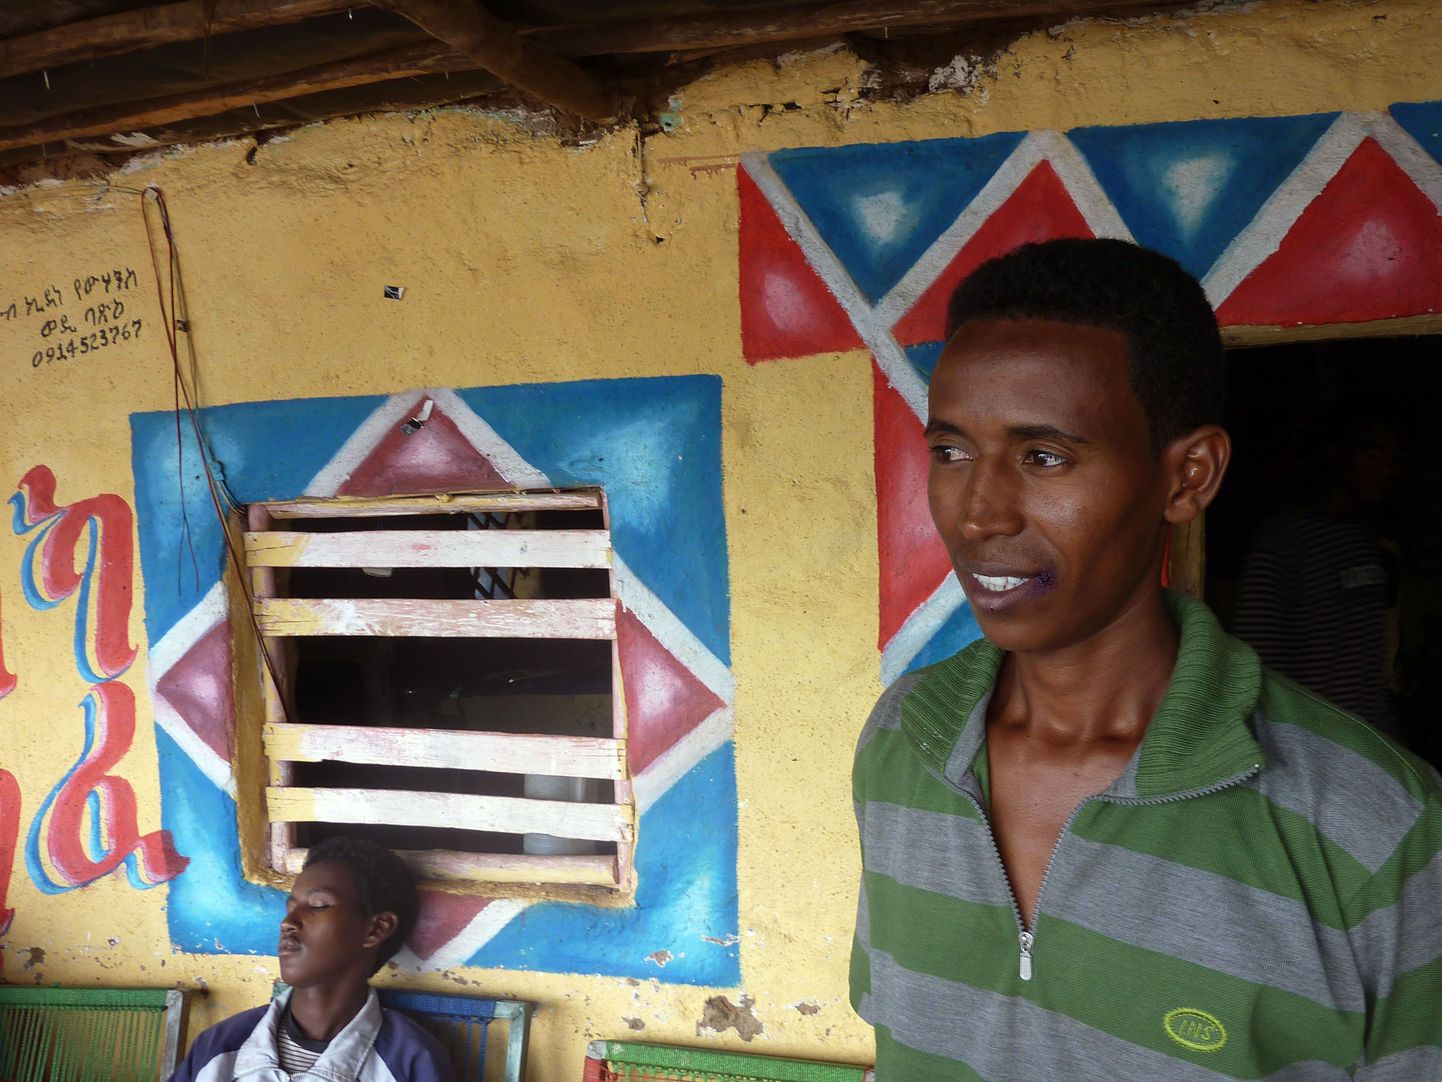 Valitsuse väidetest hoolimata põgenevad eritrealased riigis valitseva näljahäda eest. Põgenik Dawit Gebrielxavier eelmisel kuul Etioopias Endabaguna põgenikelaagris.